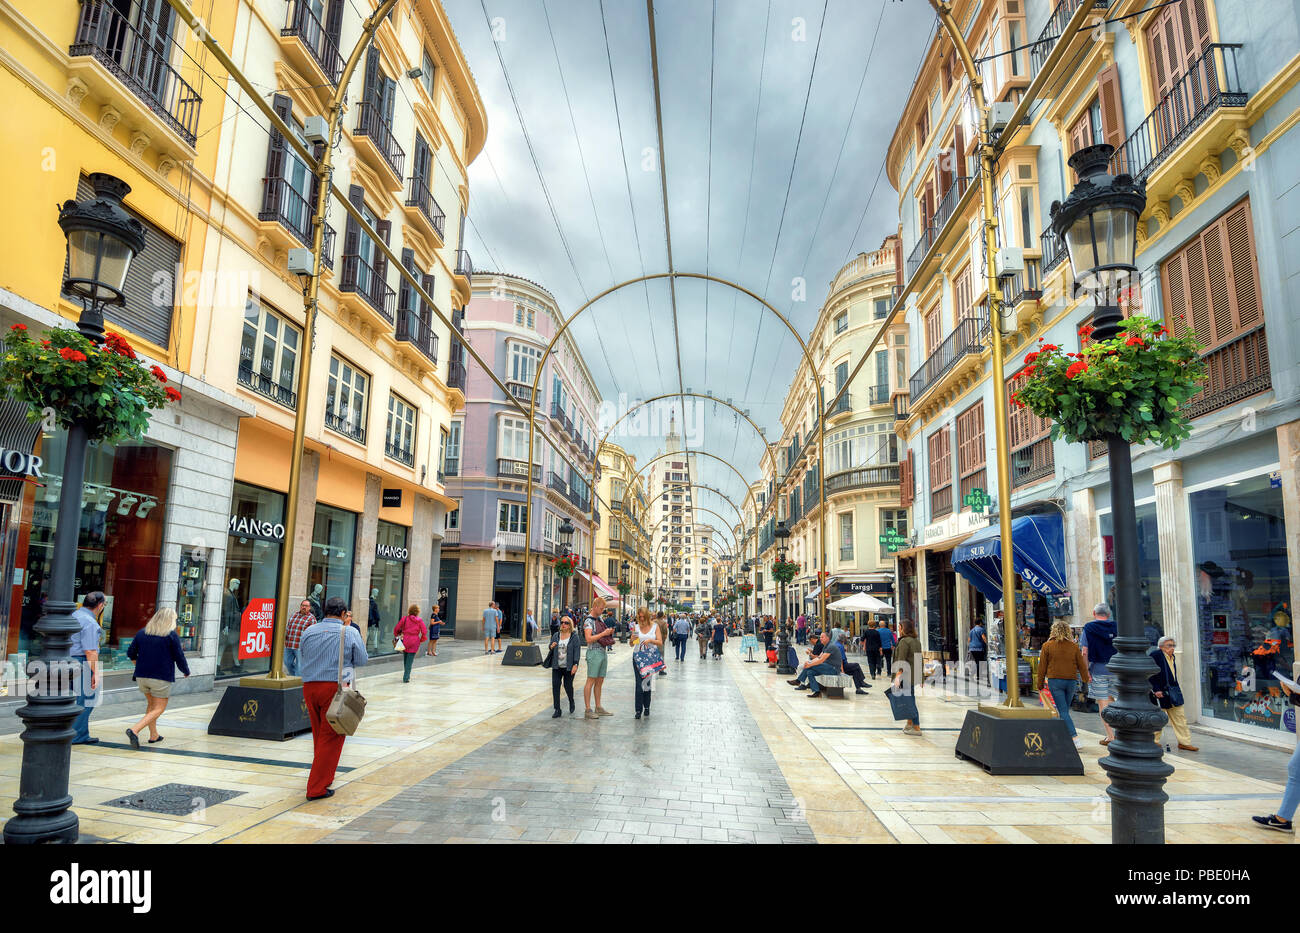 Avis de marques de Larios rue principale avec des boutiques, un café et quelques personnes dans le centre-ville commercial. Malaga, Espagne Banque D'Images